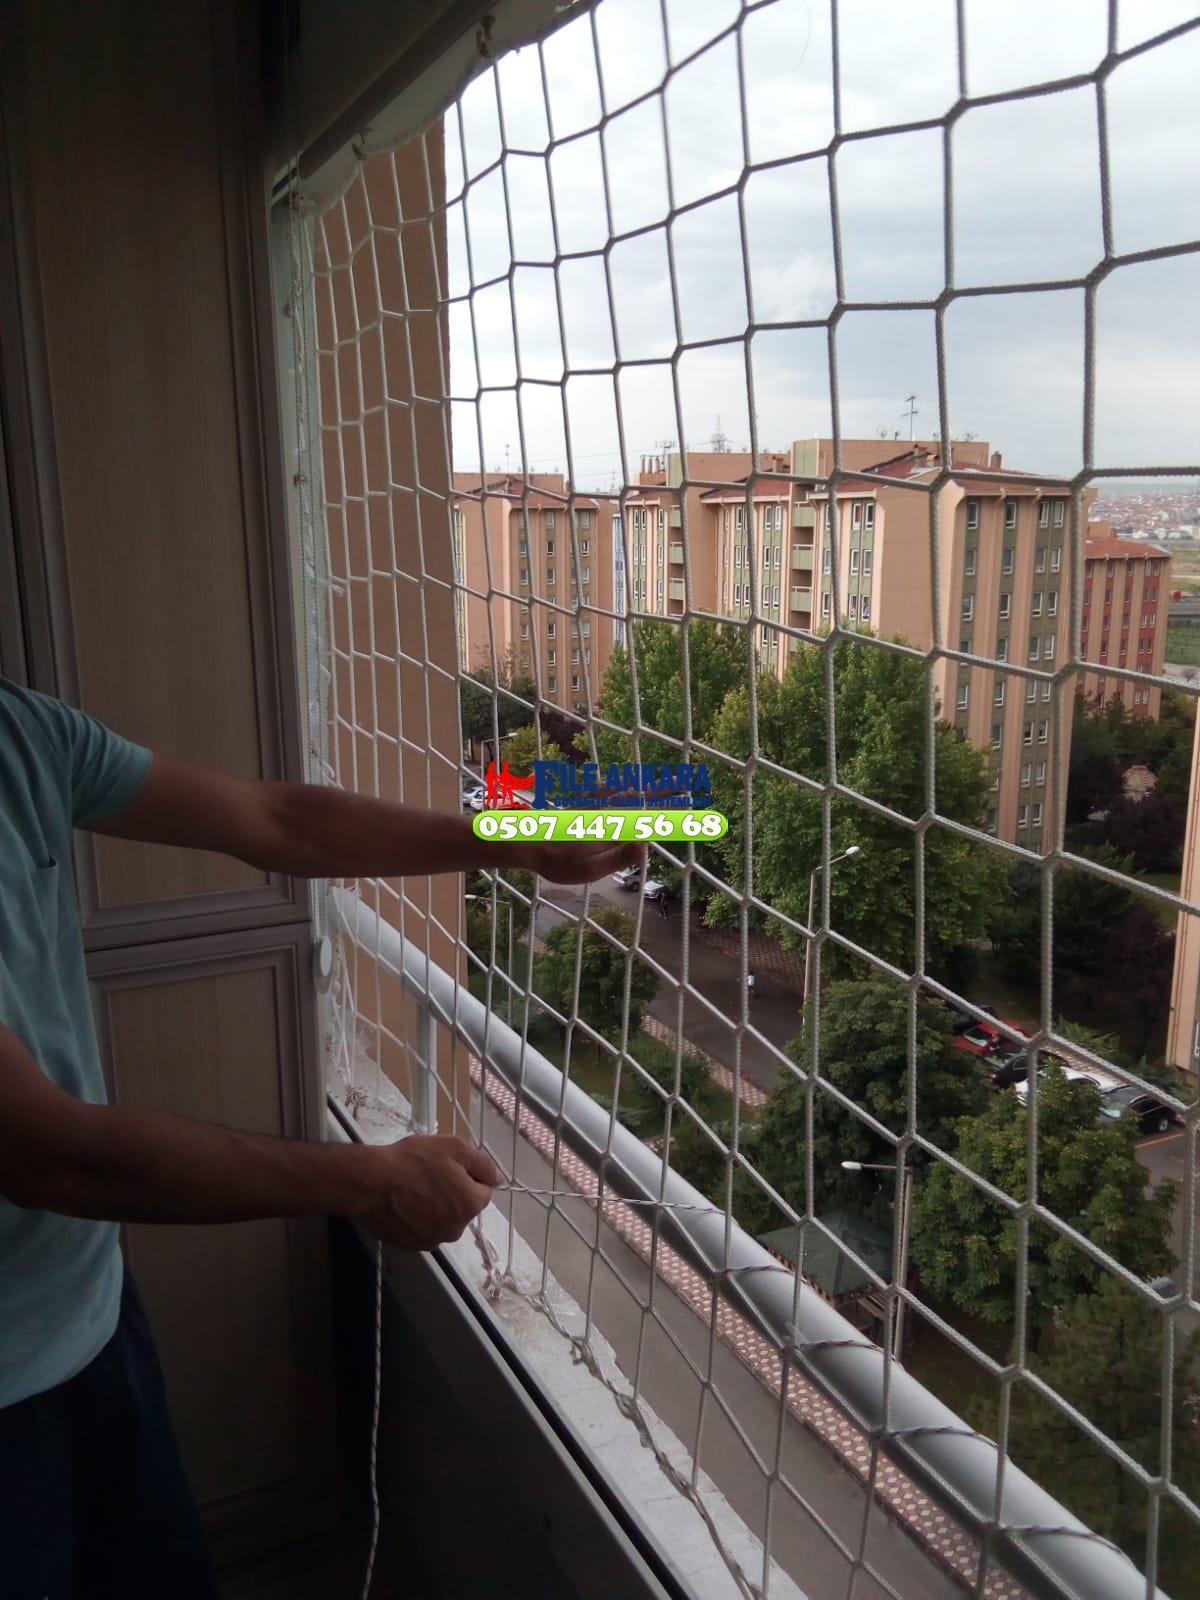  Etimesgut Balkon  koruma filesi - Merdiven filesi - En ucuz balkon güvenlik filesi satış ve montajı 0507 447 56 68